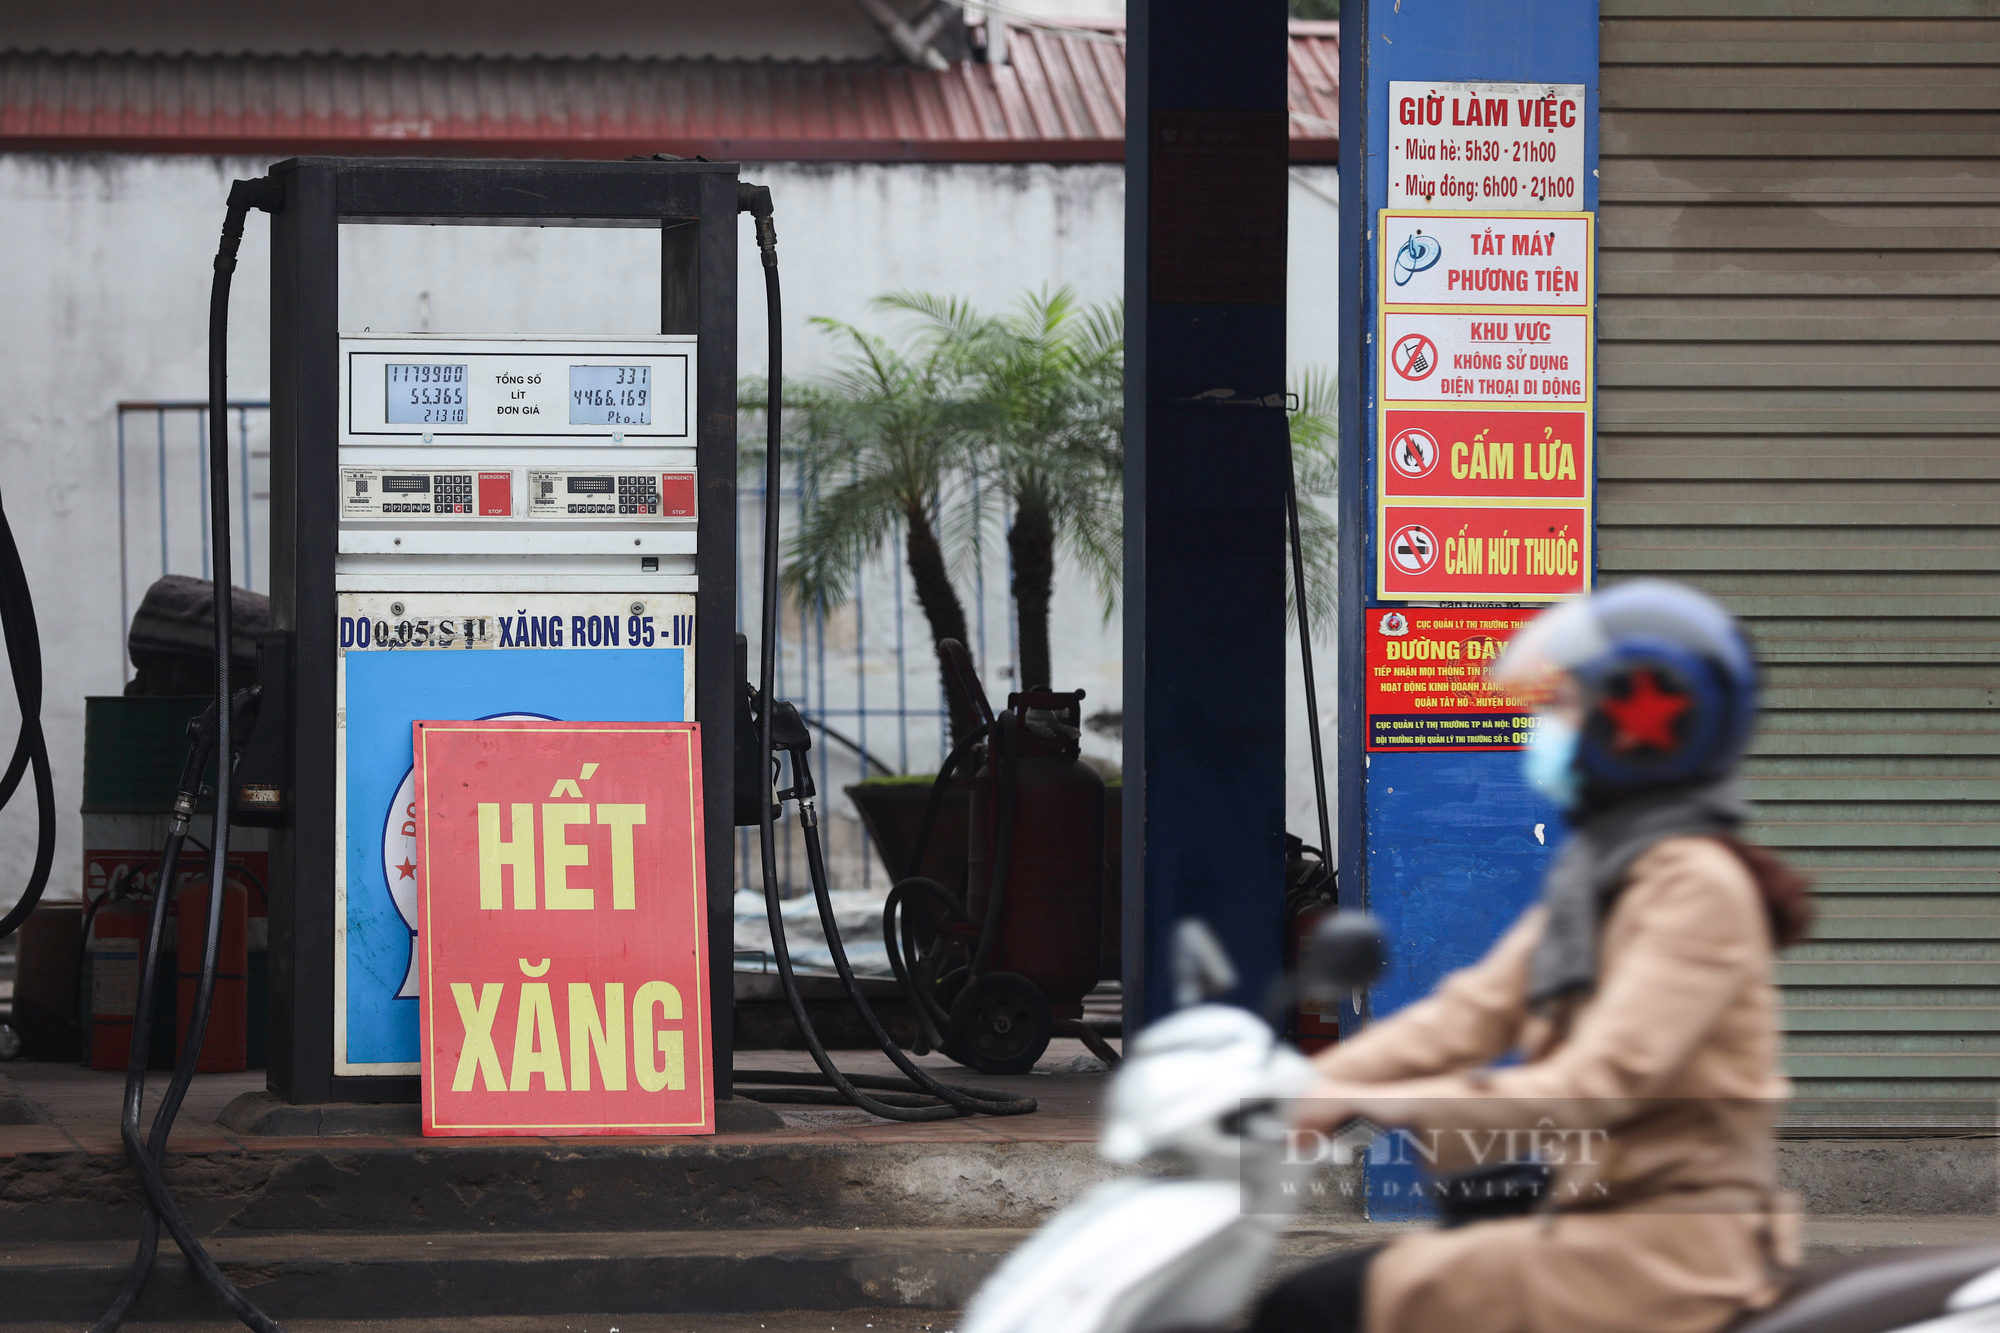 Các cây xăng tại Hà Nội đông nghịt, người dân đi làm muộn vì chờ đổ xăng - Ảnh 14.